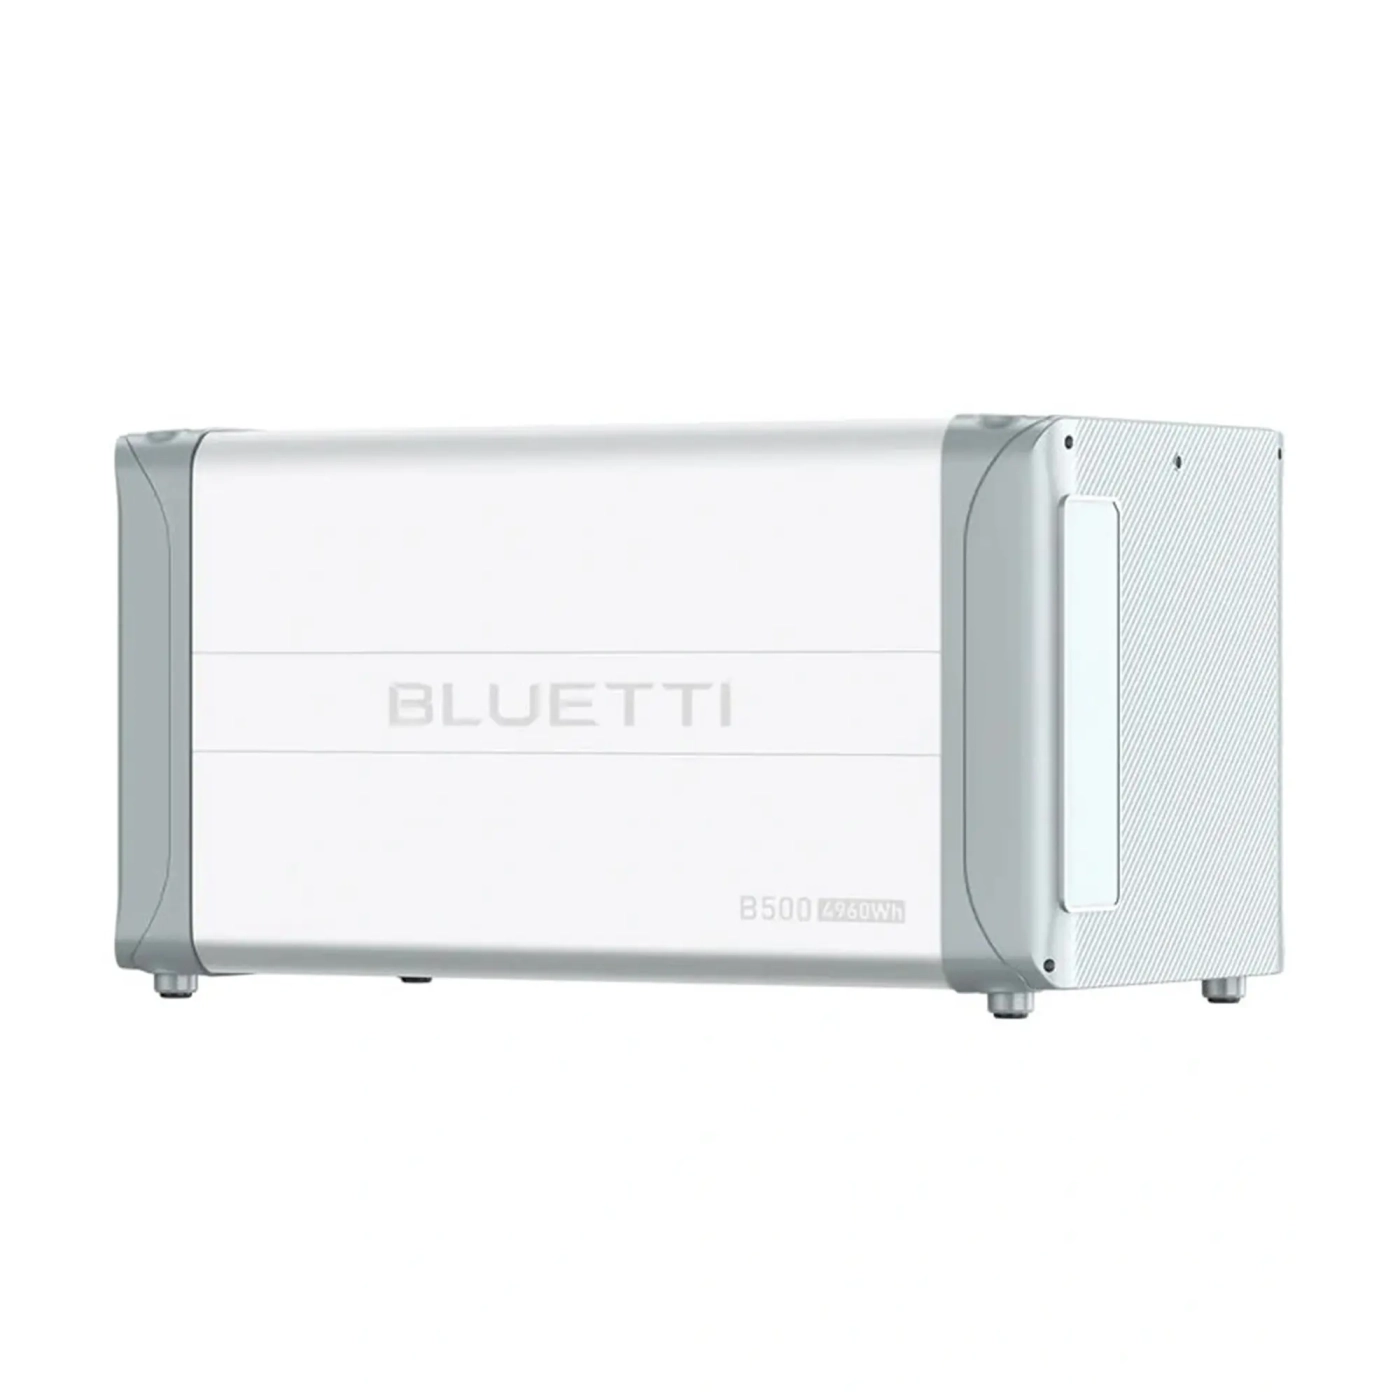 Купить Аккумуляторный модуль Bluetti B500 - фото 1